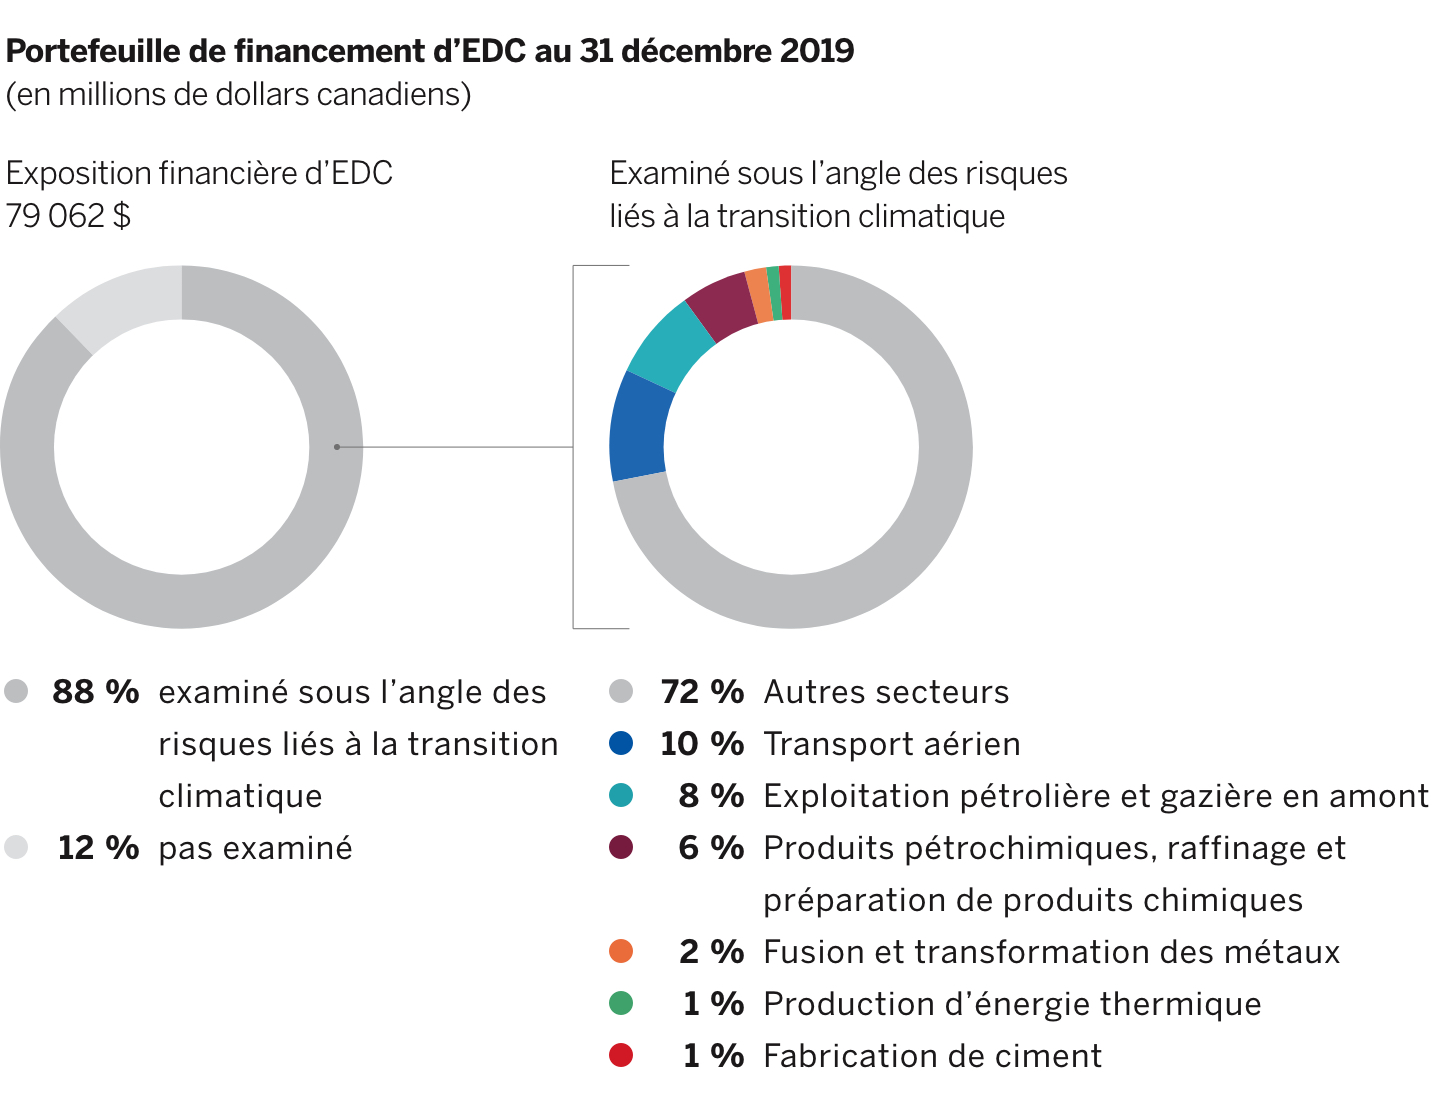 Deux diagrammes circulaires du portefeuille de financement d’EDC au 31 décembre 2019.